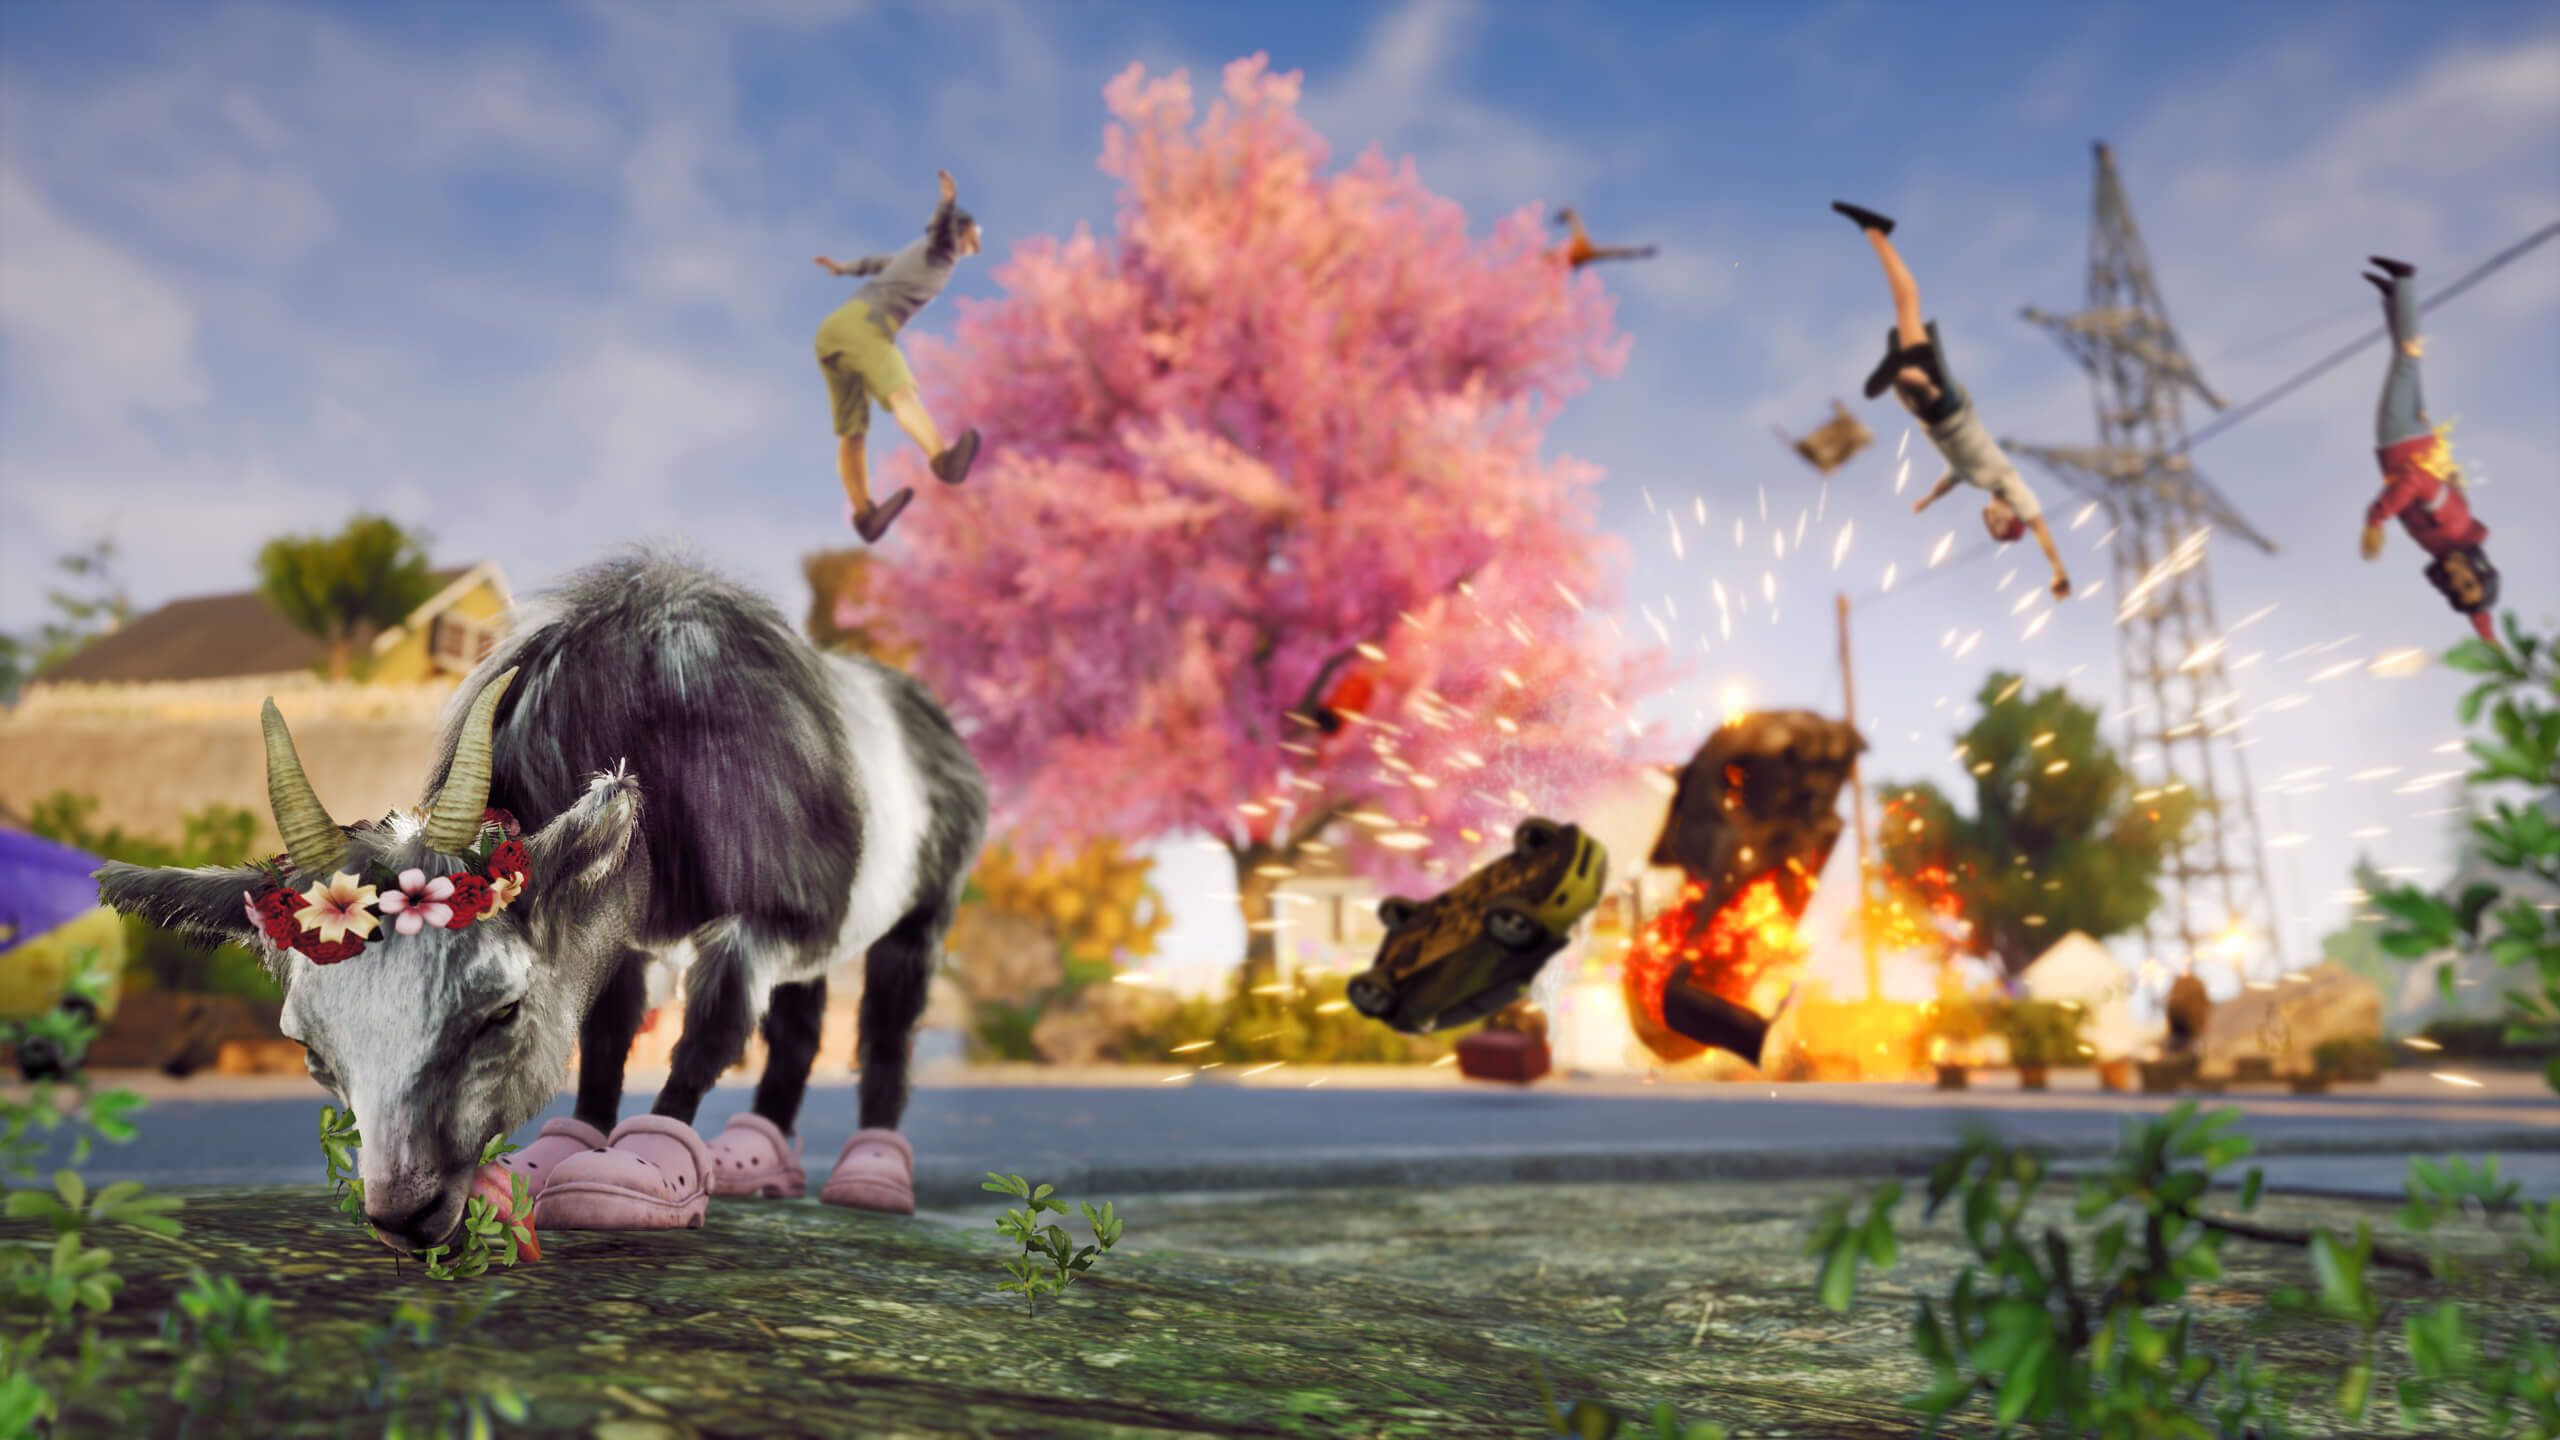 Ne sürpriz: GTA 6 görüntülerinin sızdırıldığı bir Goat Simulator 3 reklamı yayından kaldırıldı